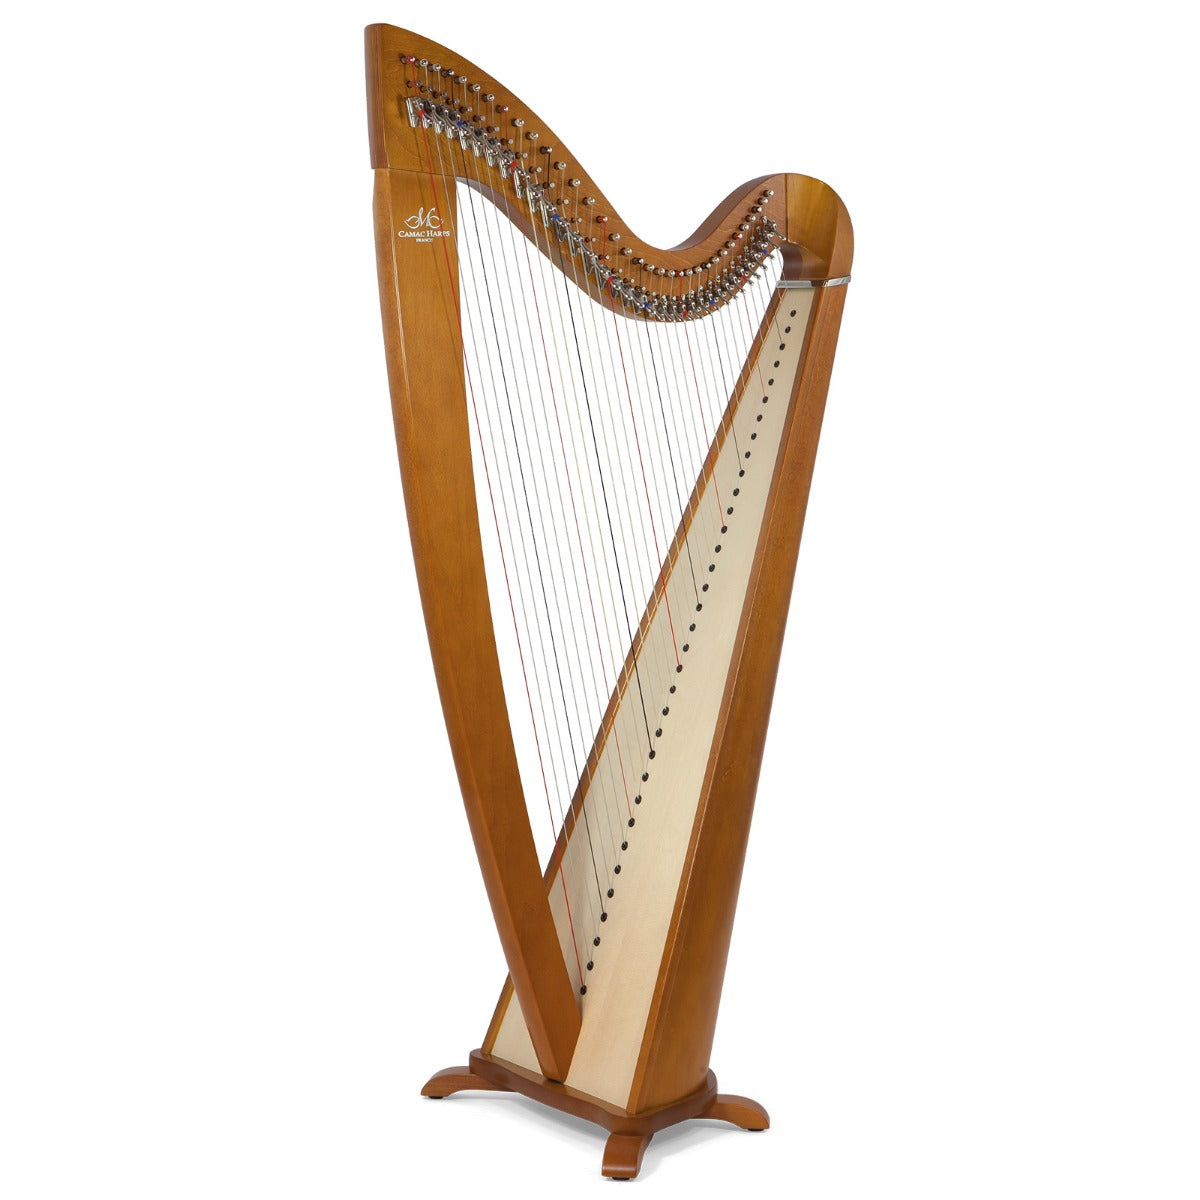 Camac Telenn Lever Harp, 34 Gut Strings in Cherry